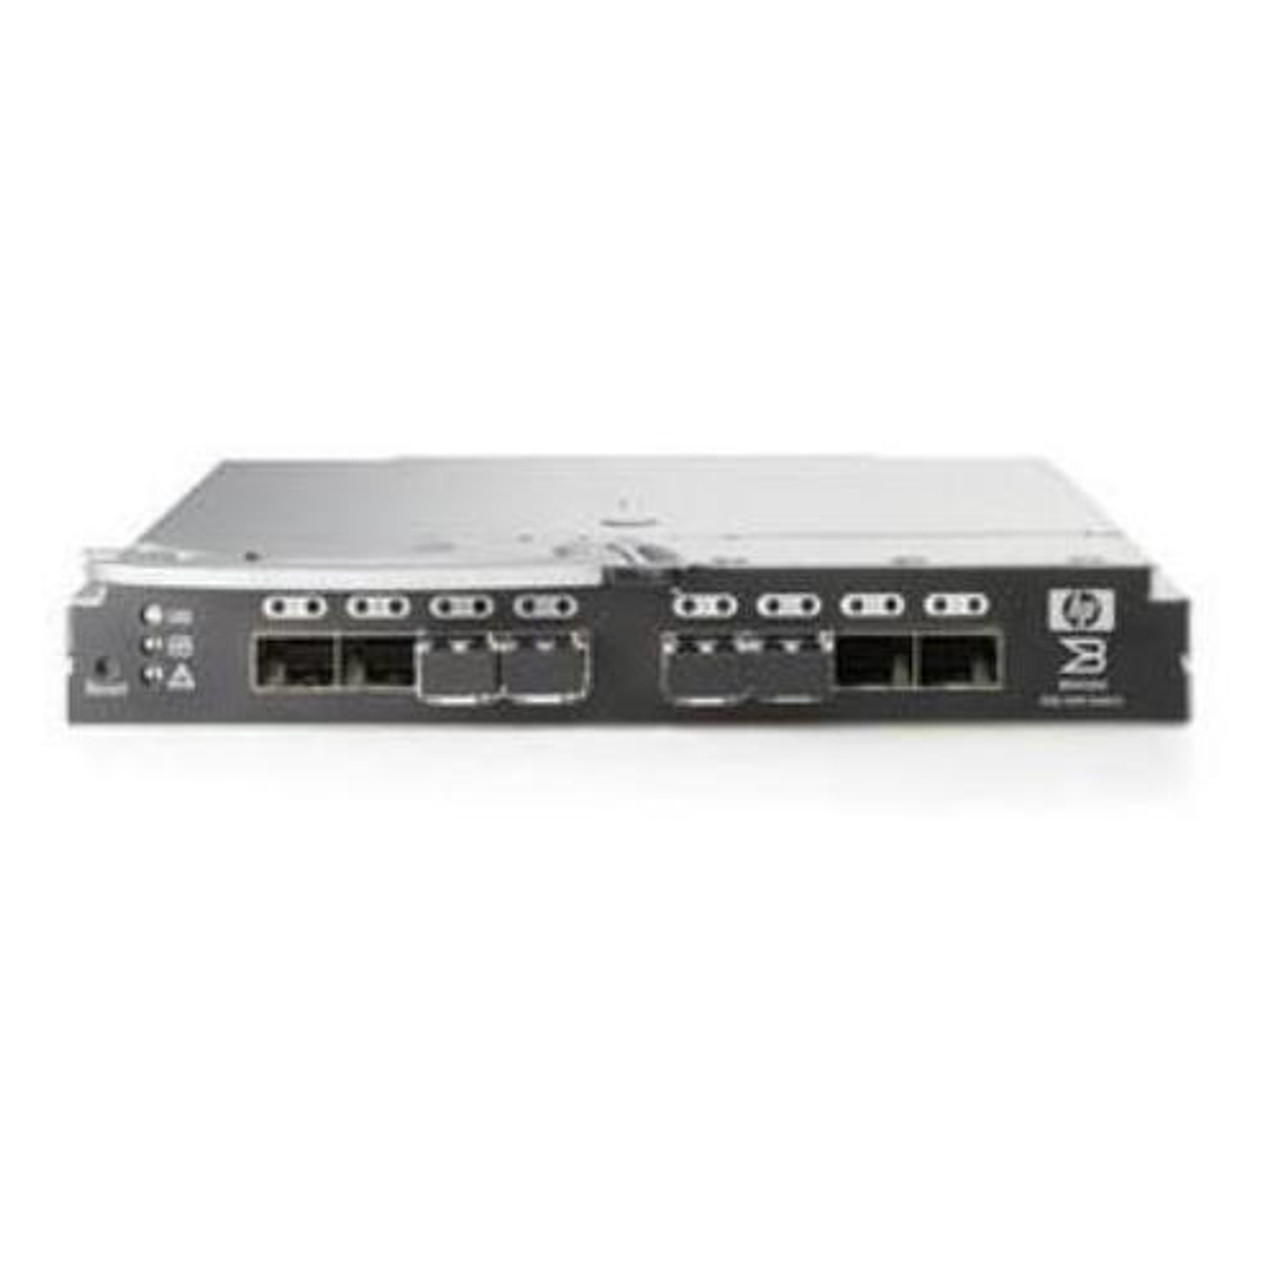 AE370A - Brocade 4Gb SAN Switch 4/12